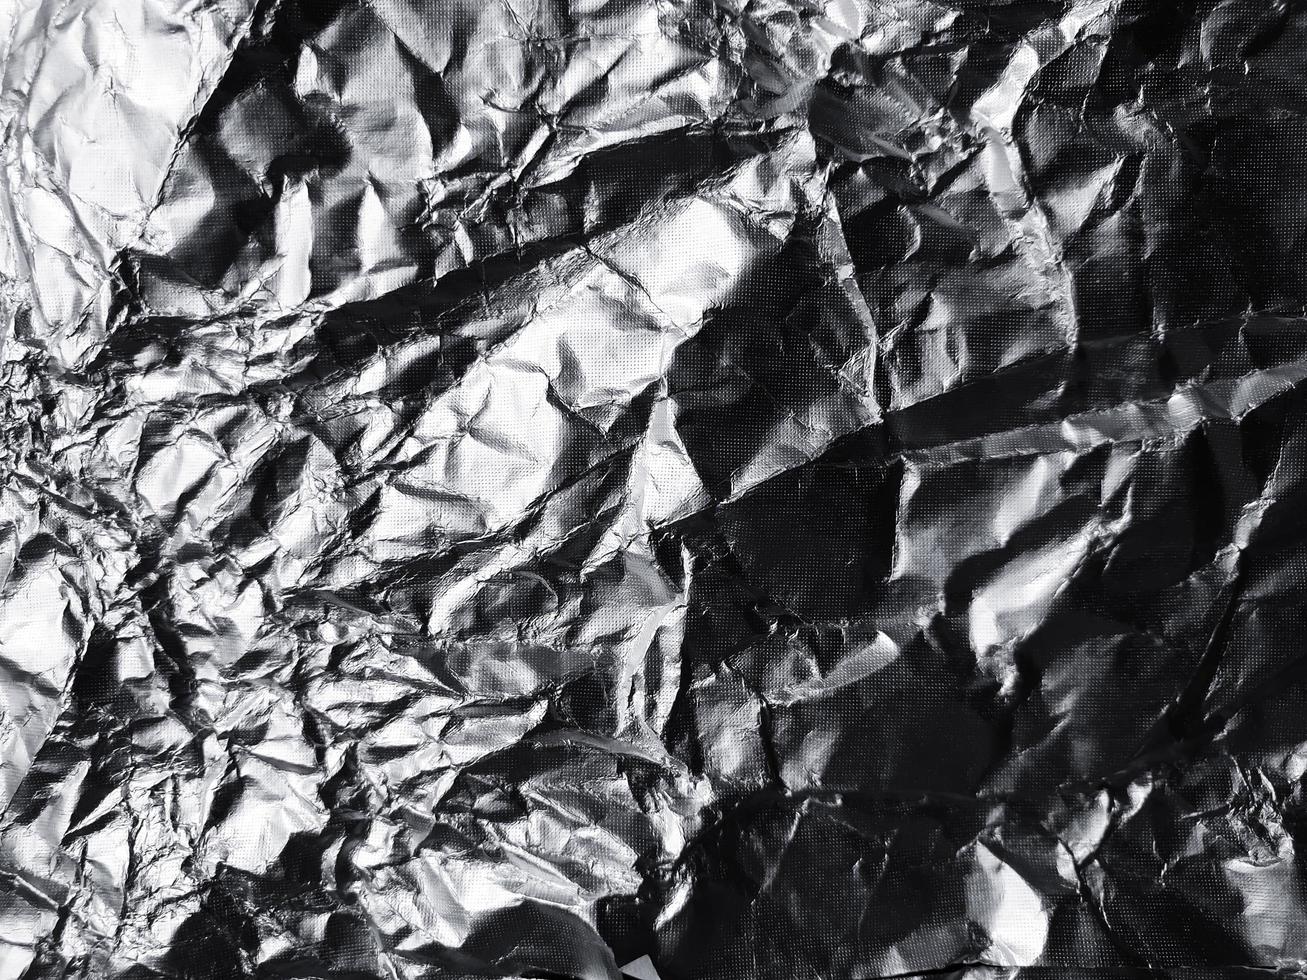 ytan av aluminiumfoliestruktur för bakgrunds- och designmaterial. skrynklig textur samling av silverfolie. abstrakt skrynkligt mönster bakgrund foto